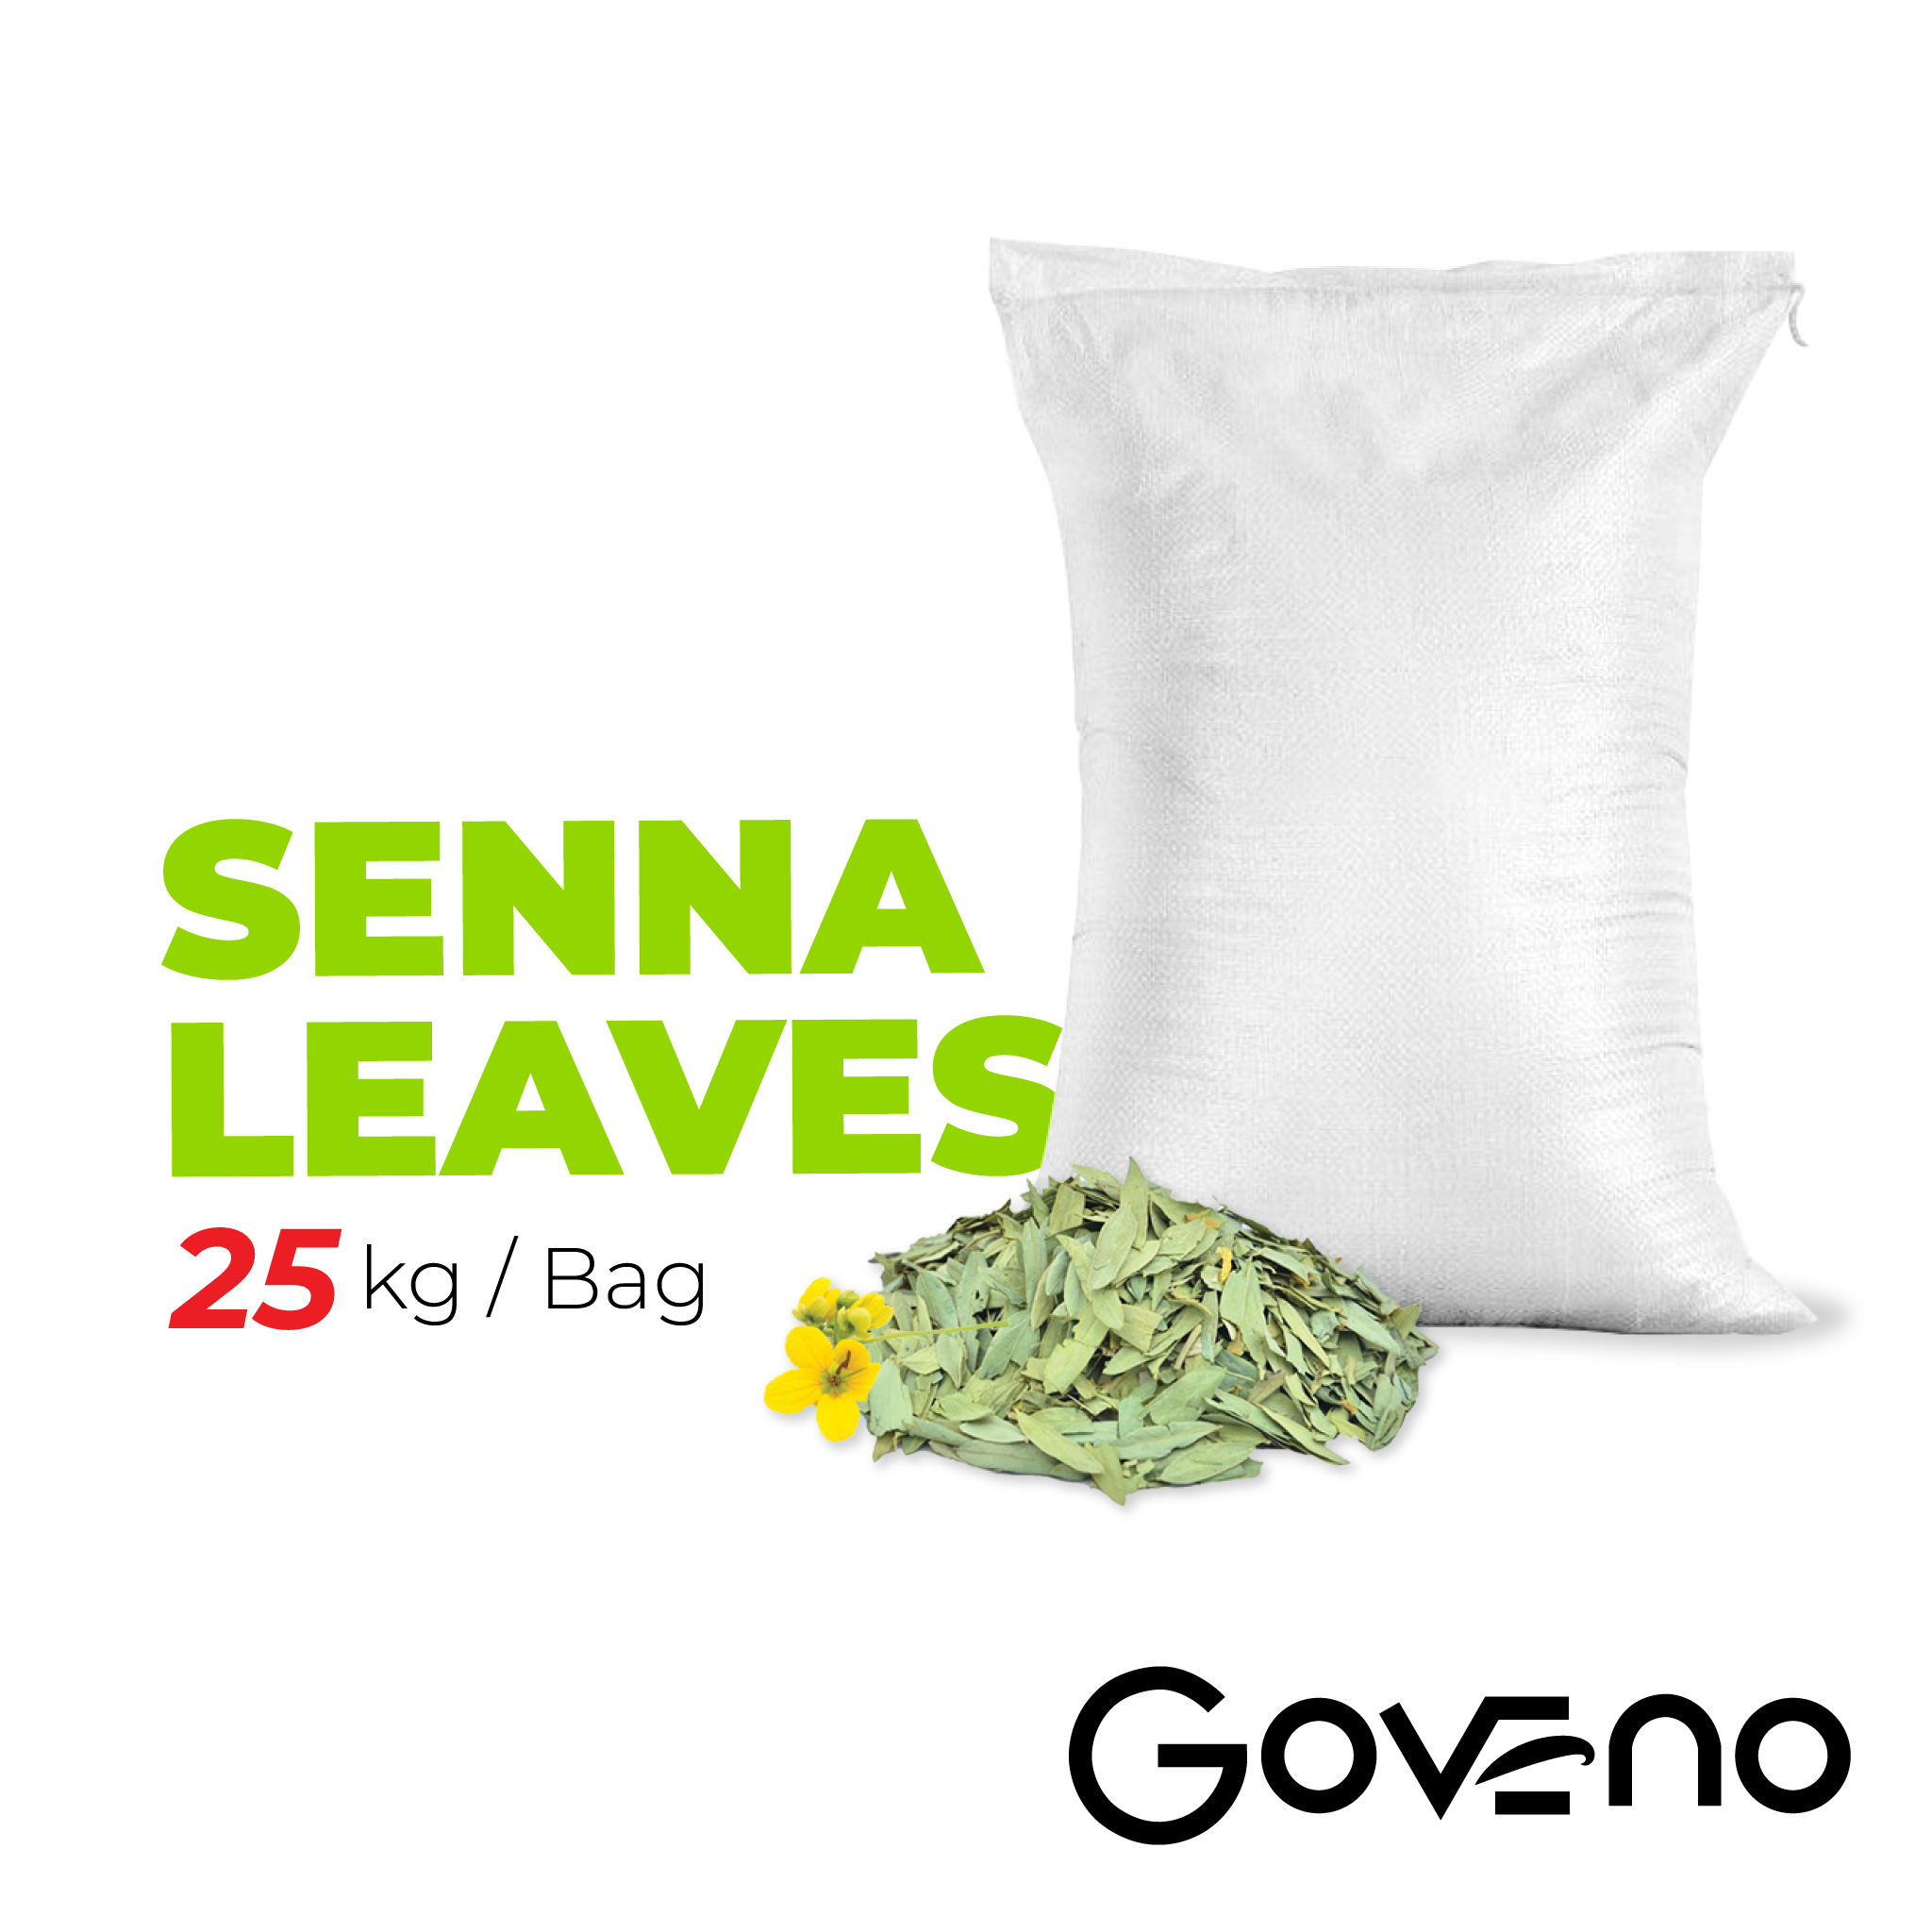 Daun Senna RM7/kg 25kg (25kg x 1 bag)